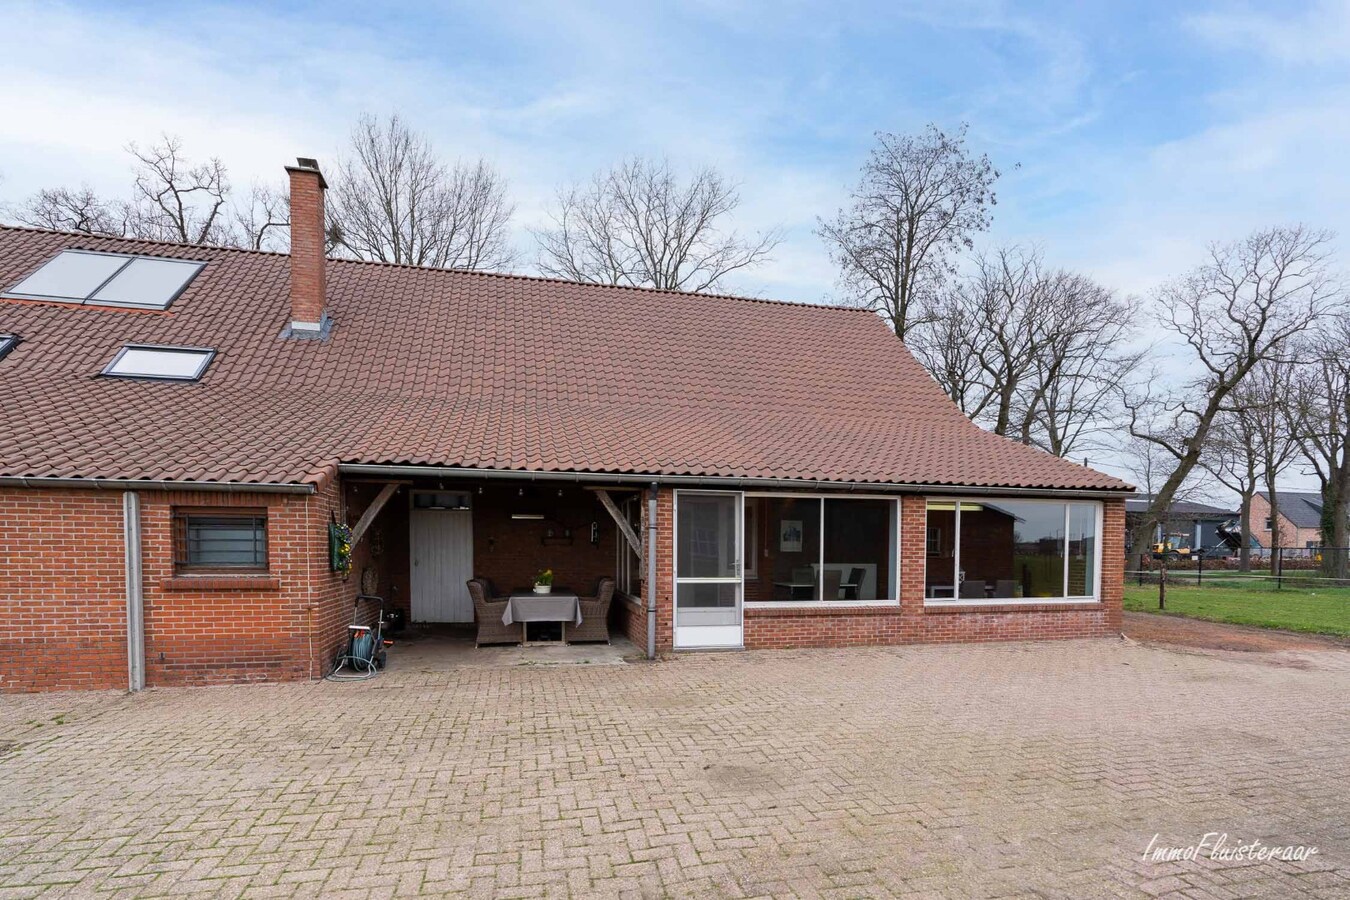 Property sold in Loenhout